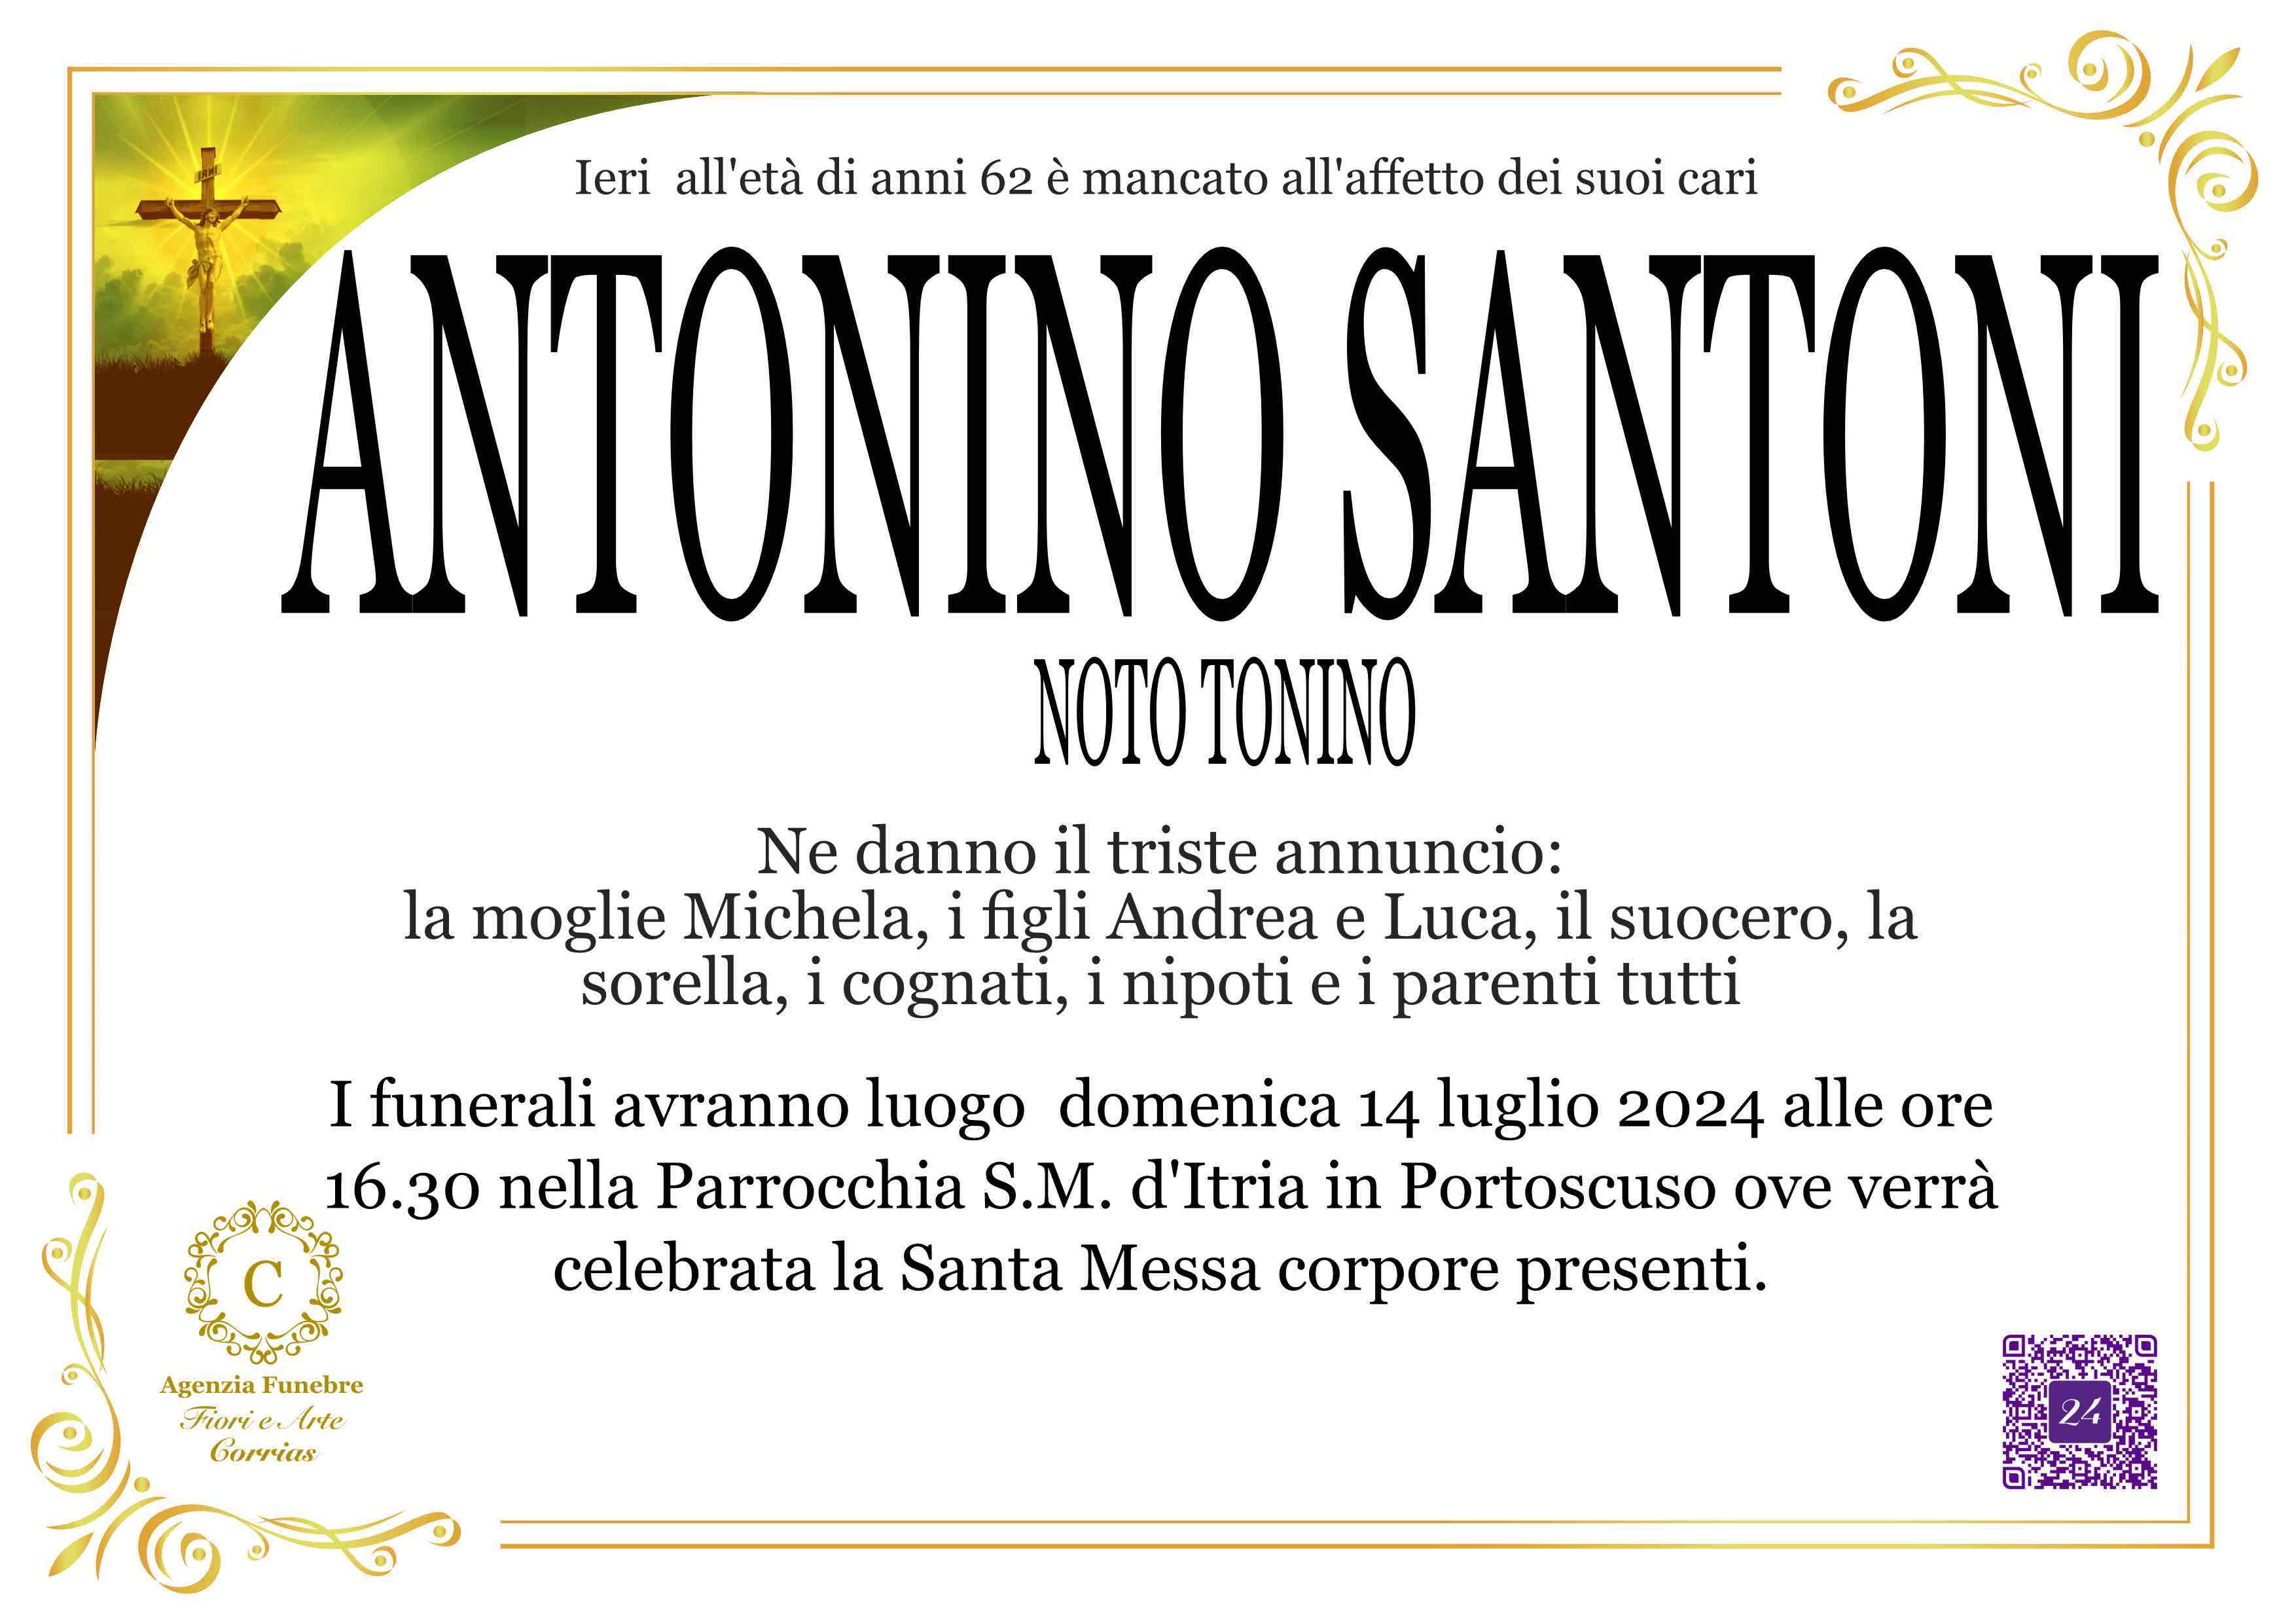 Antonino Santoni